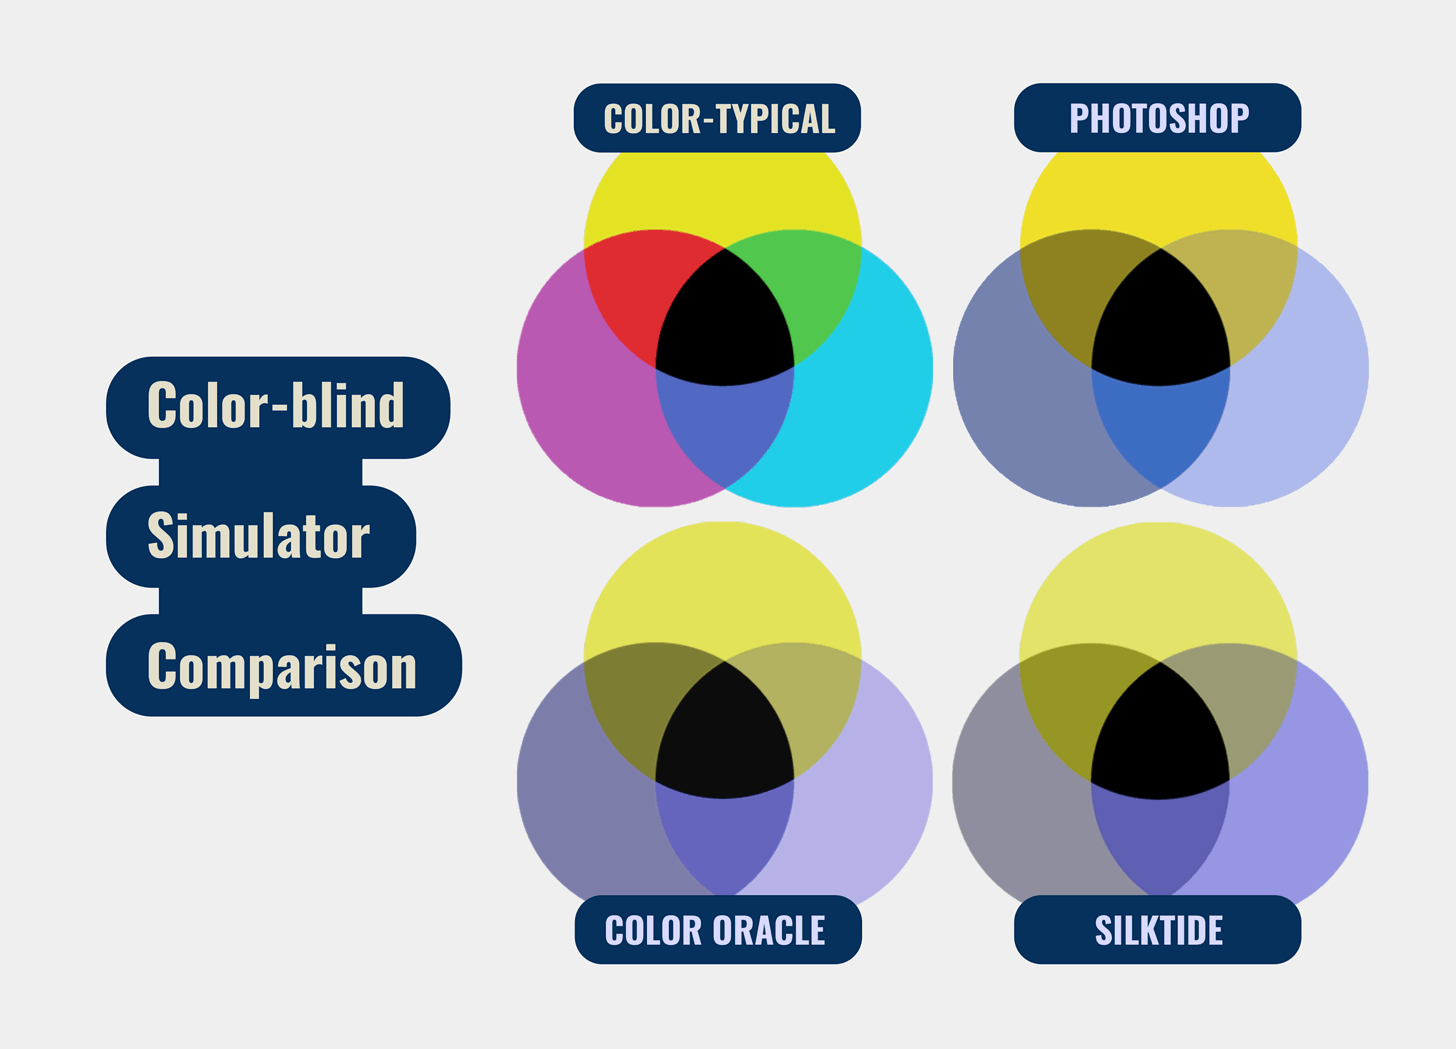 A color wheel diagram comparison of 3 different color-blindness simulators.